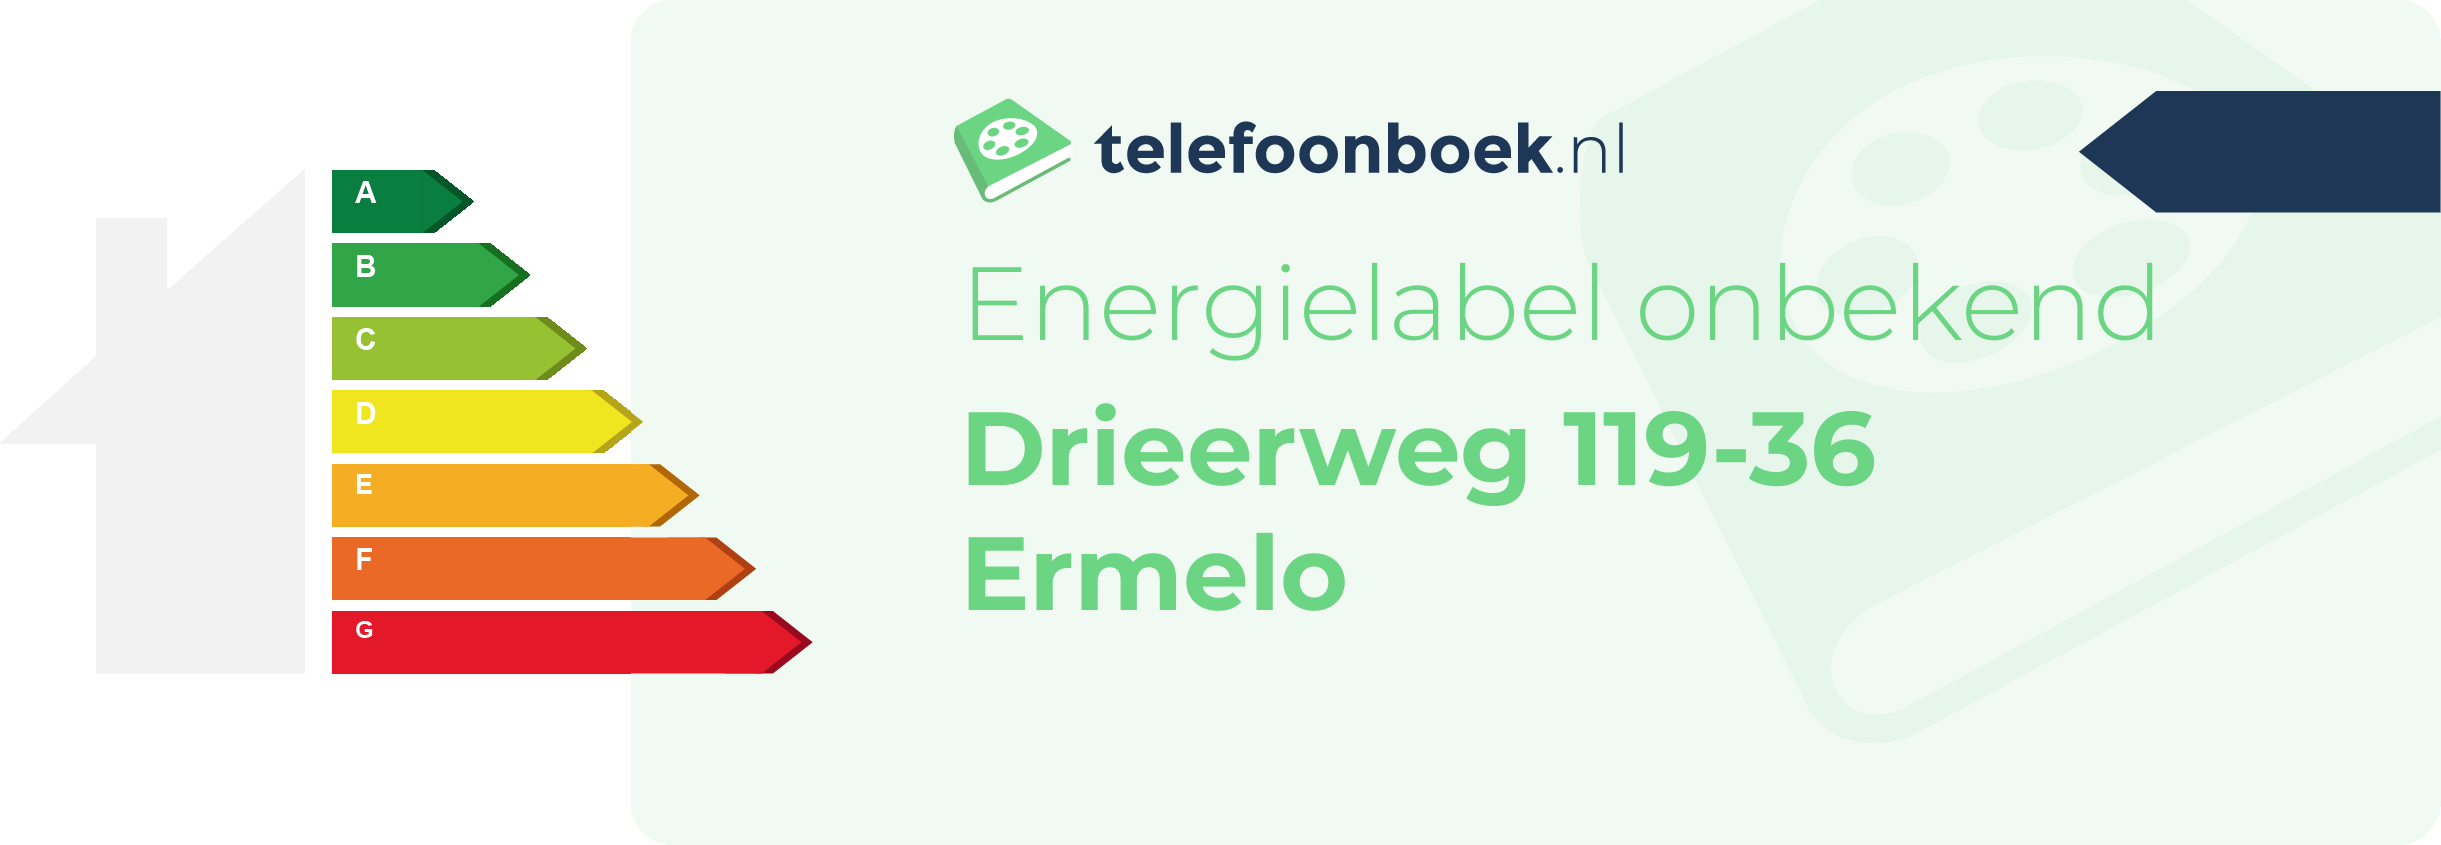 Energielabel Drieerweg 119-36 Ermelo